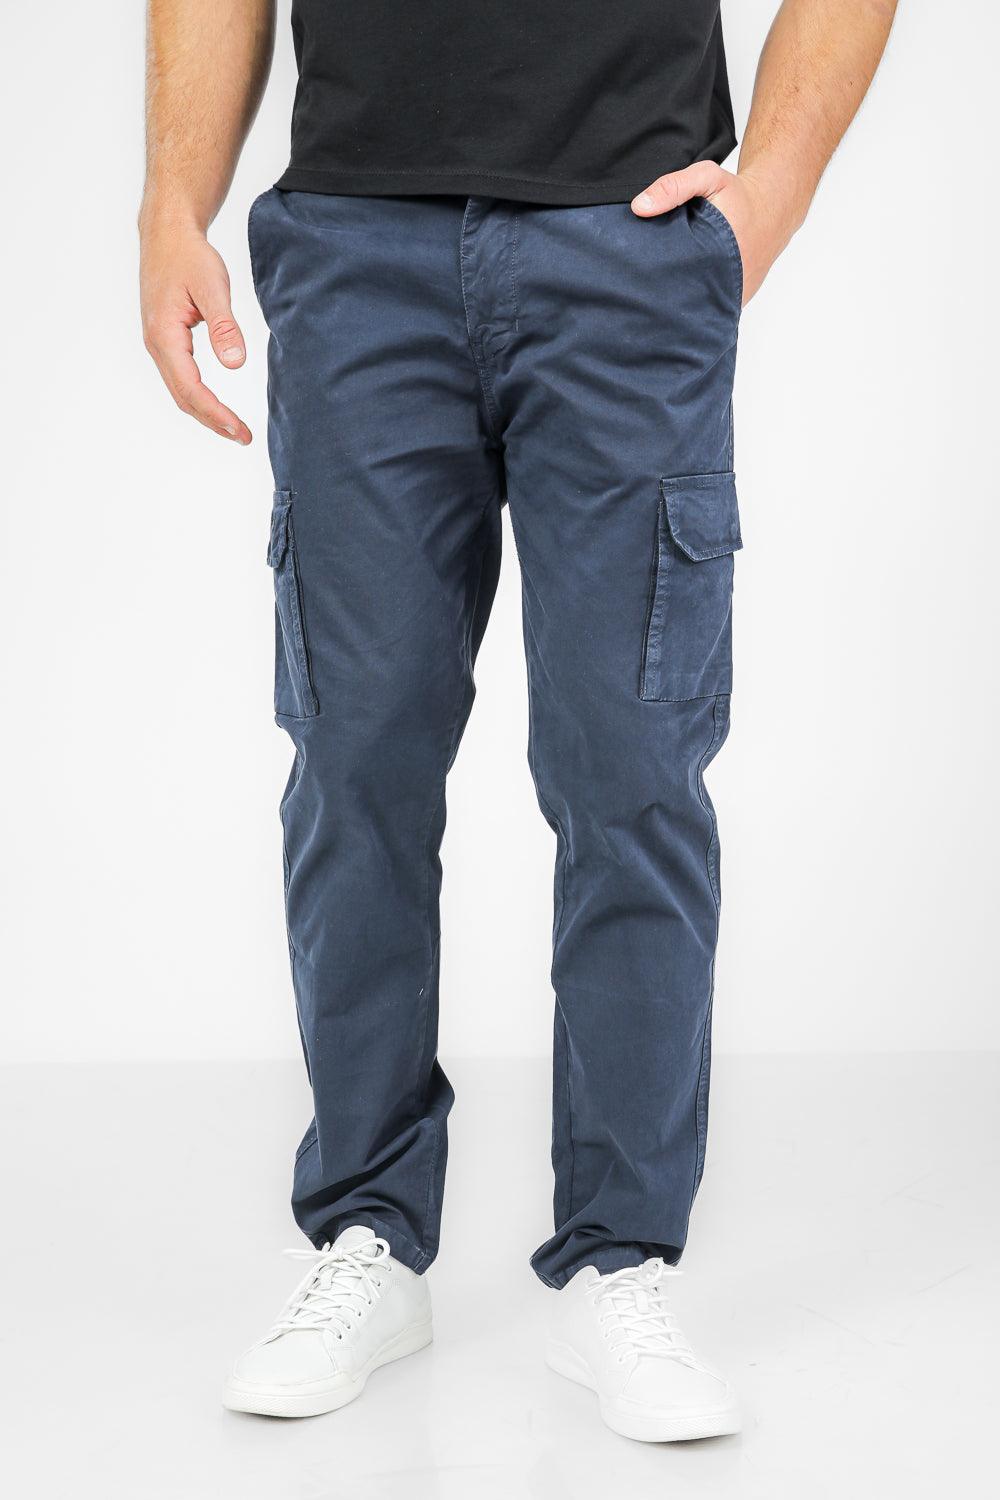 SCORCHER - מכנסי דגמ"ח CLASSIC בצבע נייבי - MASHBIR//365